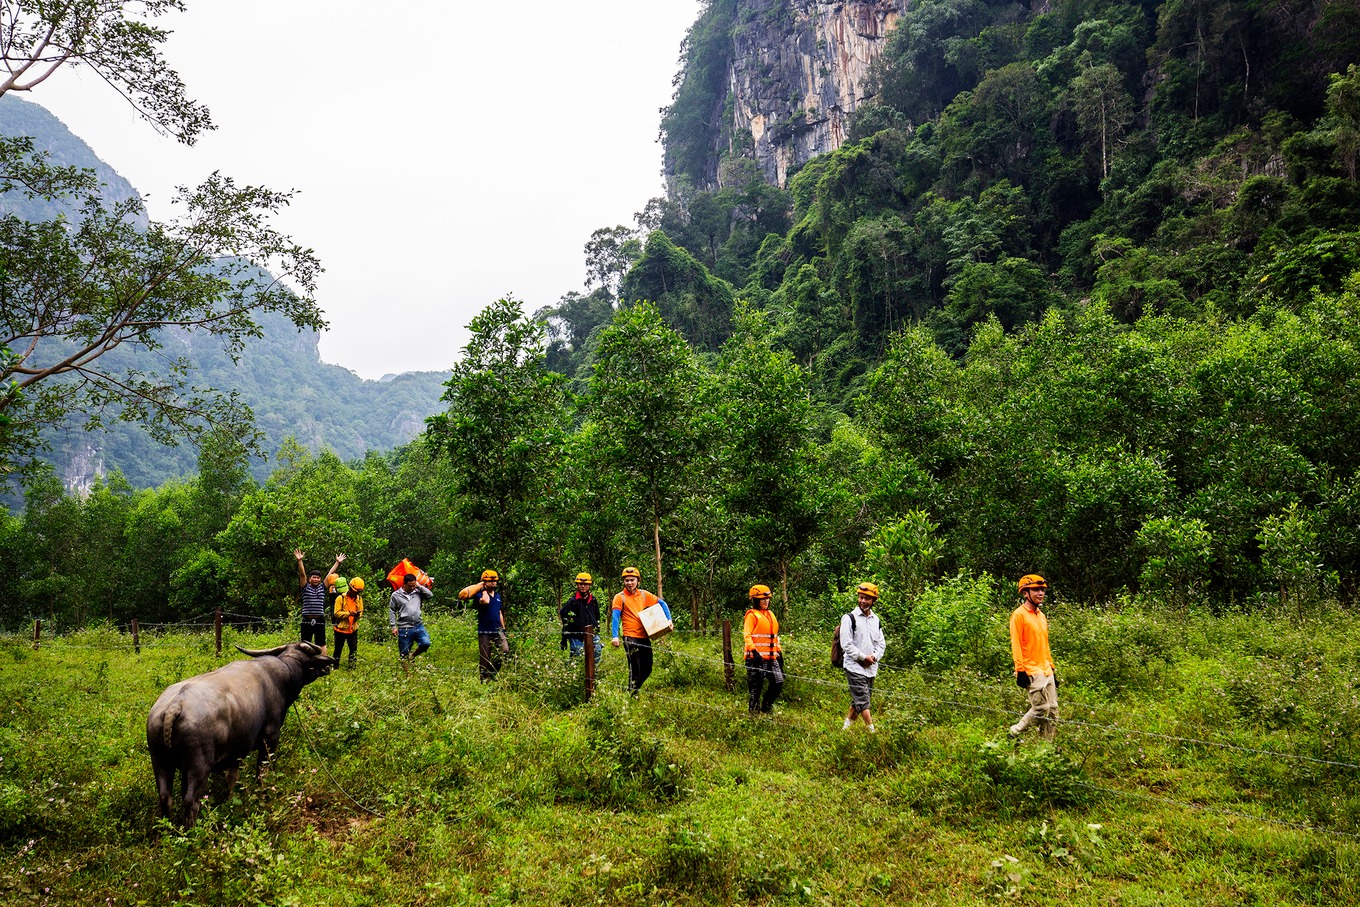 Chiêm ngưỡng đường hầm tình yêu trong hang động đẹp nhất nhì đất Việt1